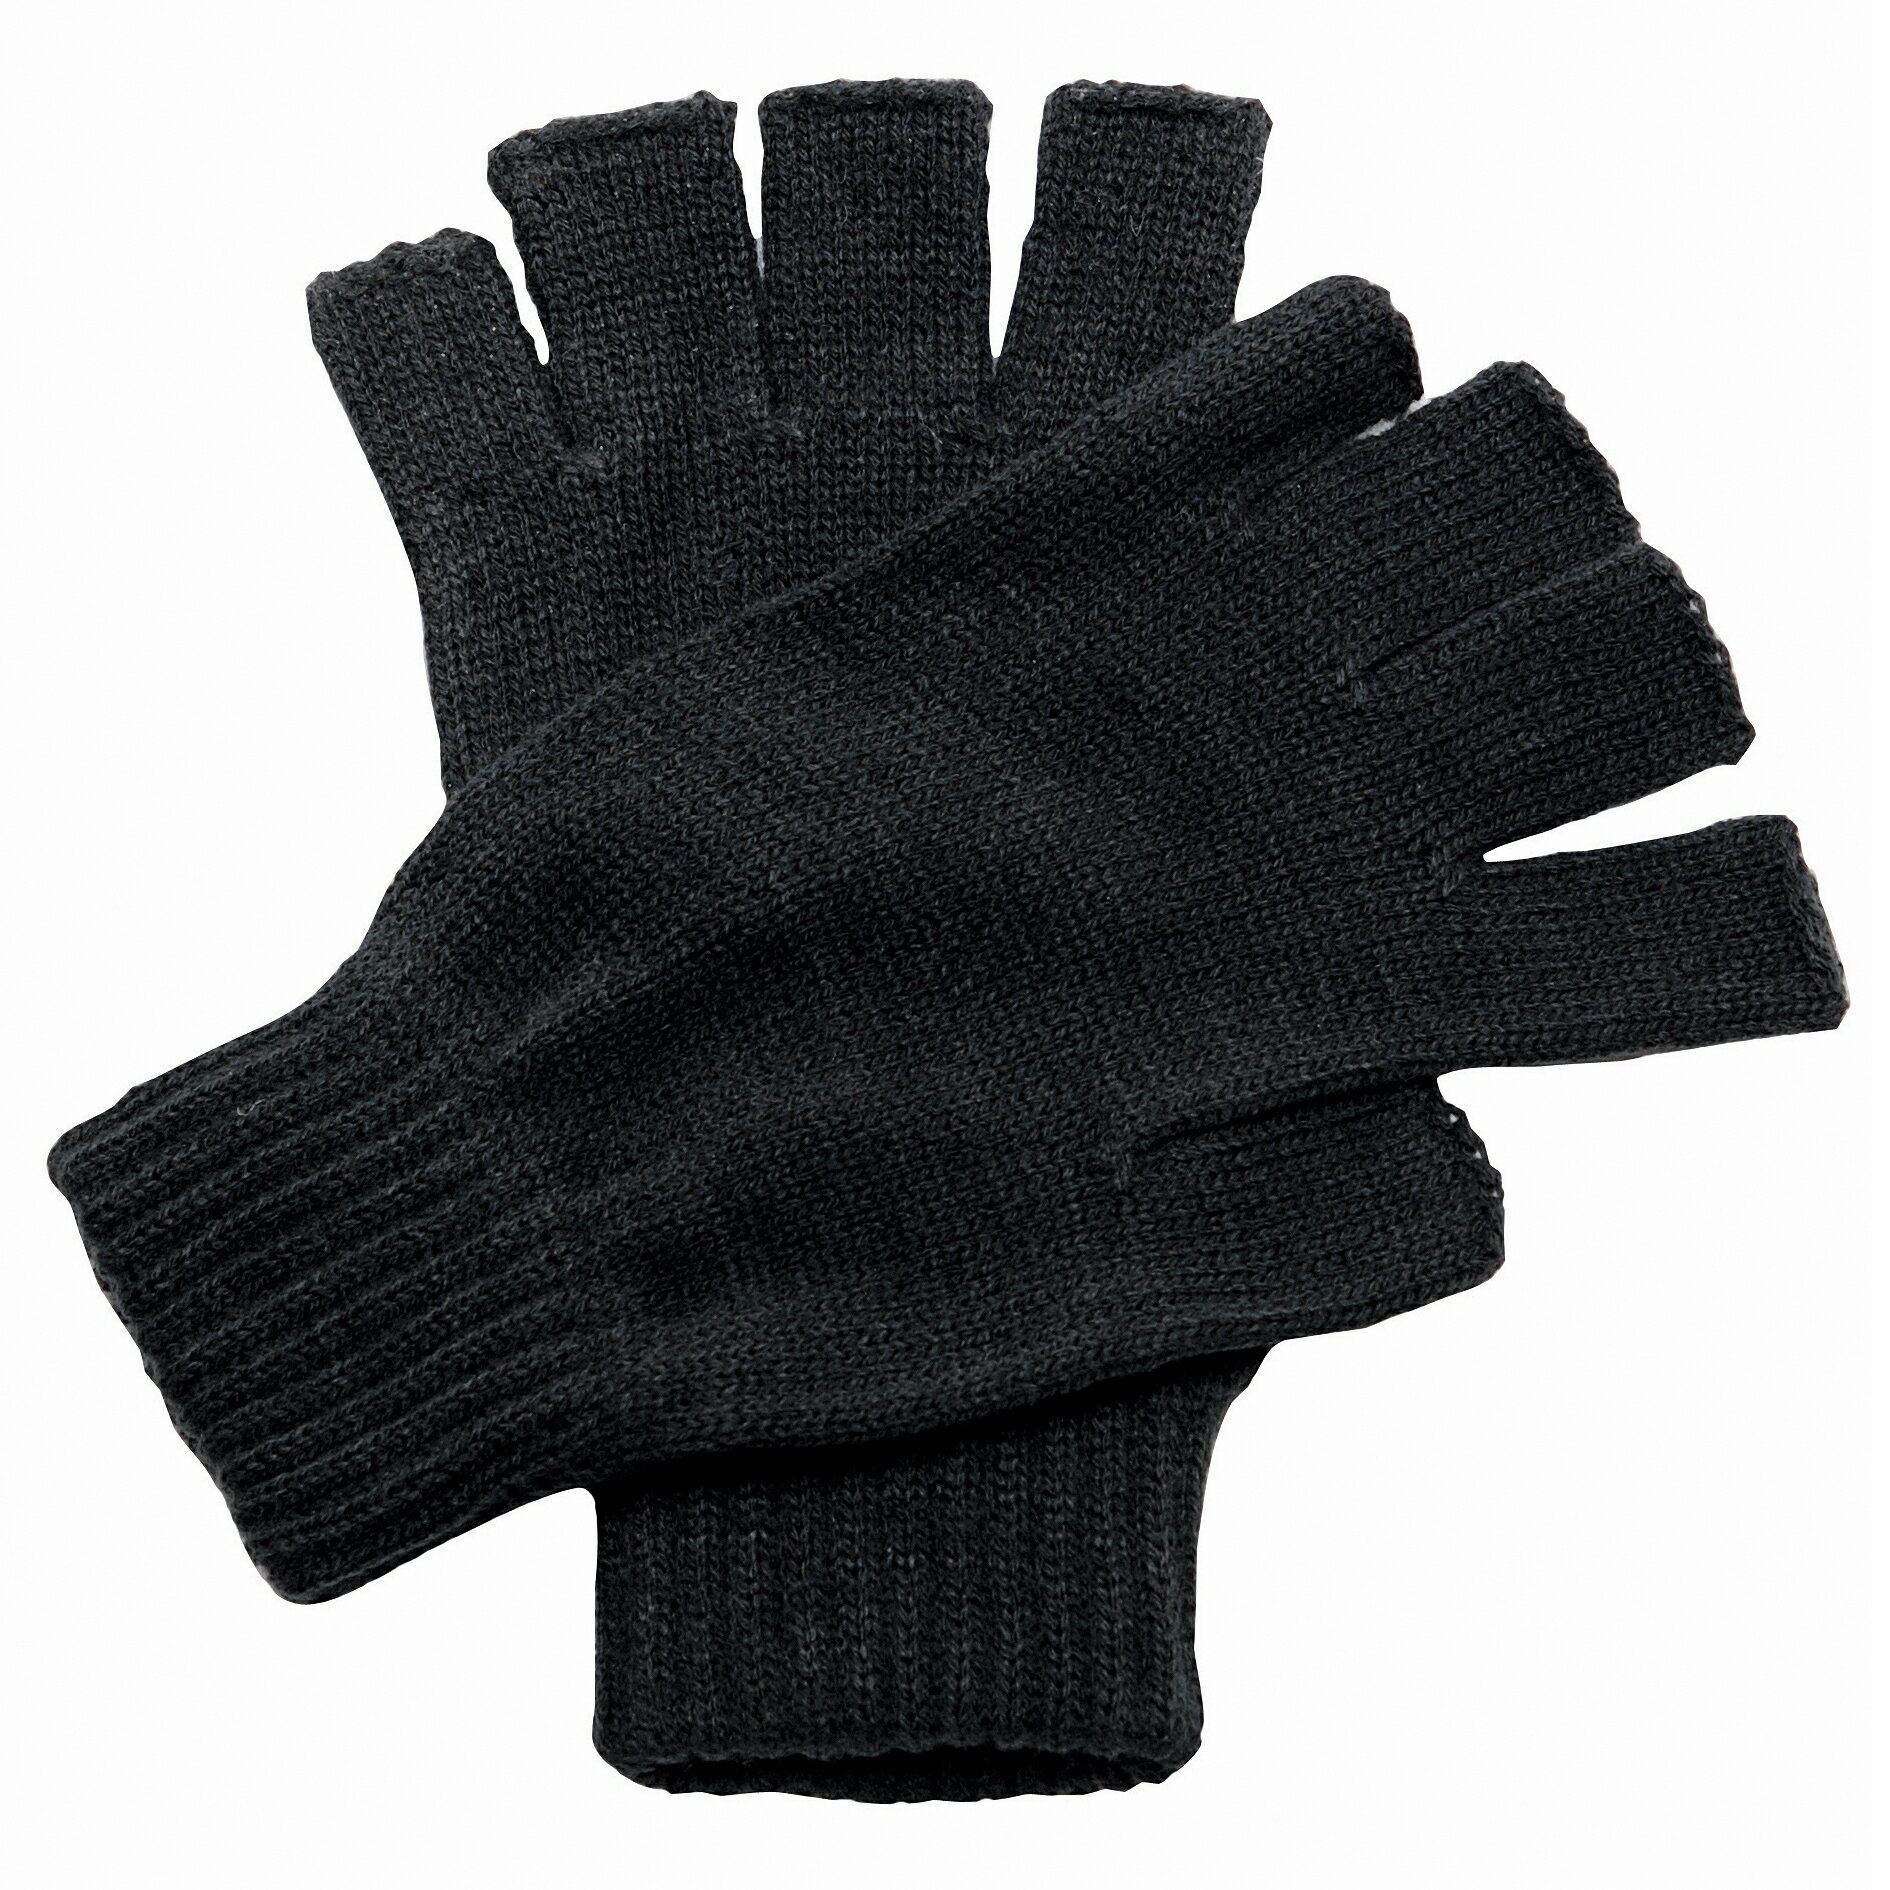 (レガッタ) Regatta ユニセックス 冬用 フィンガーカットグローブ 手袋 男女共用 